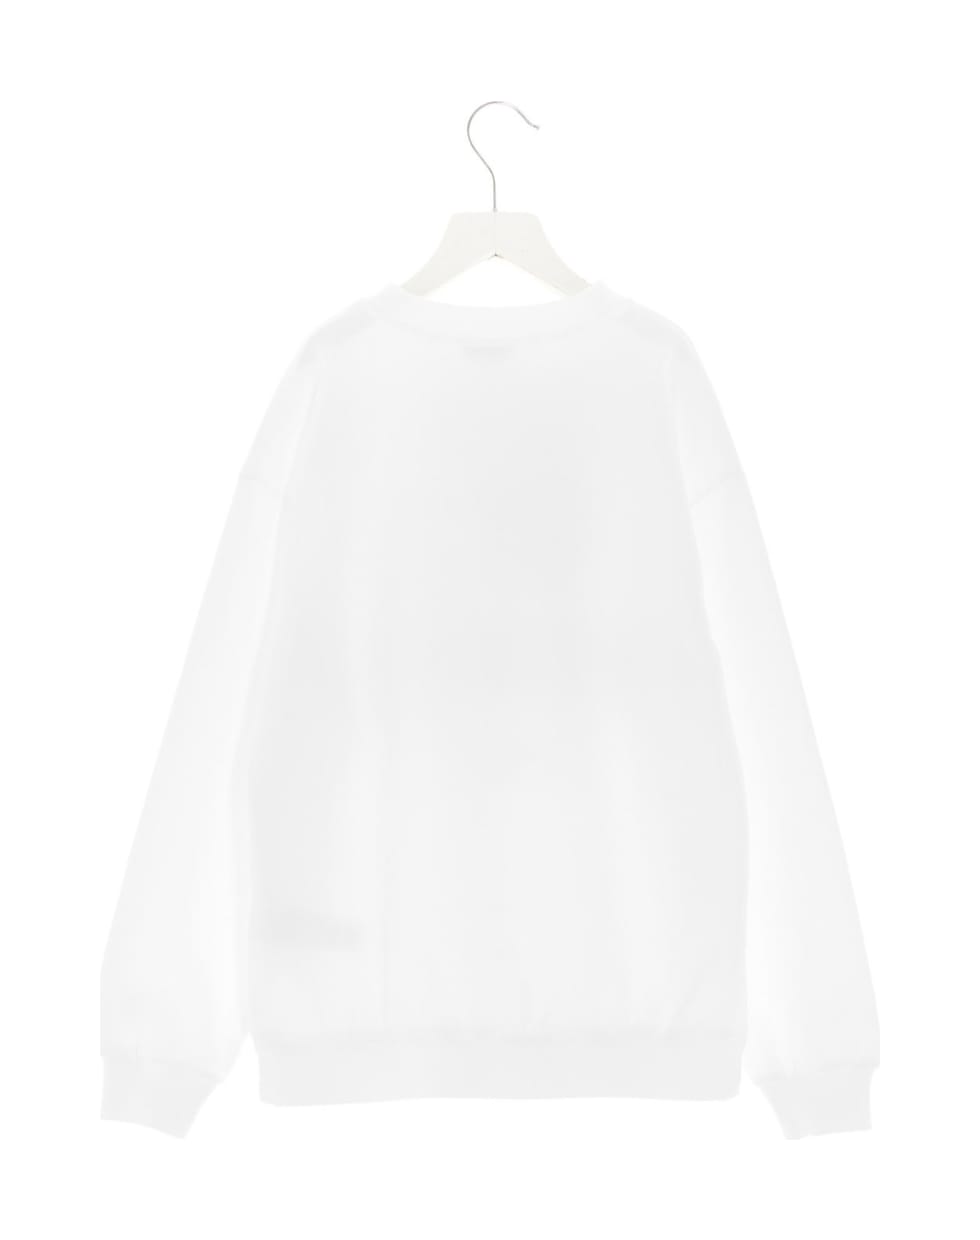 Dolce & Gabbana '90s Supermodel' Sweatshirt - Bianco